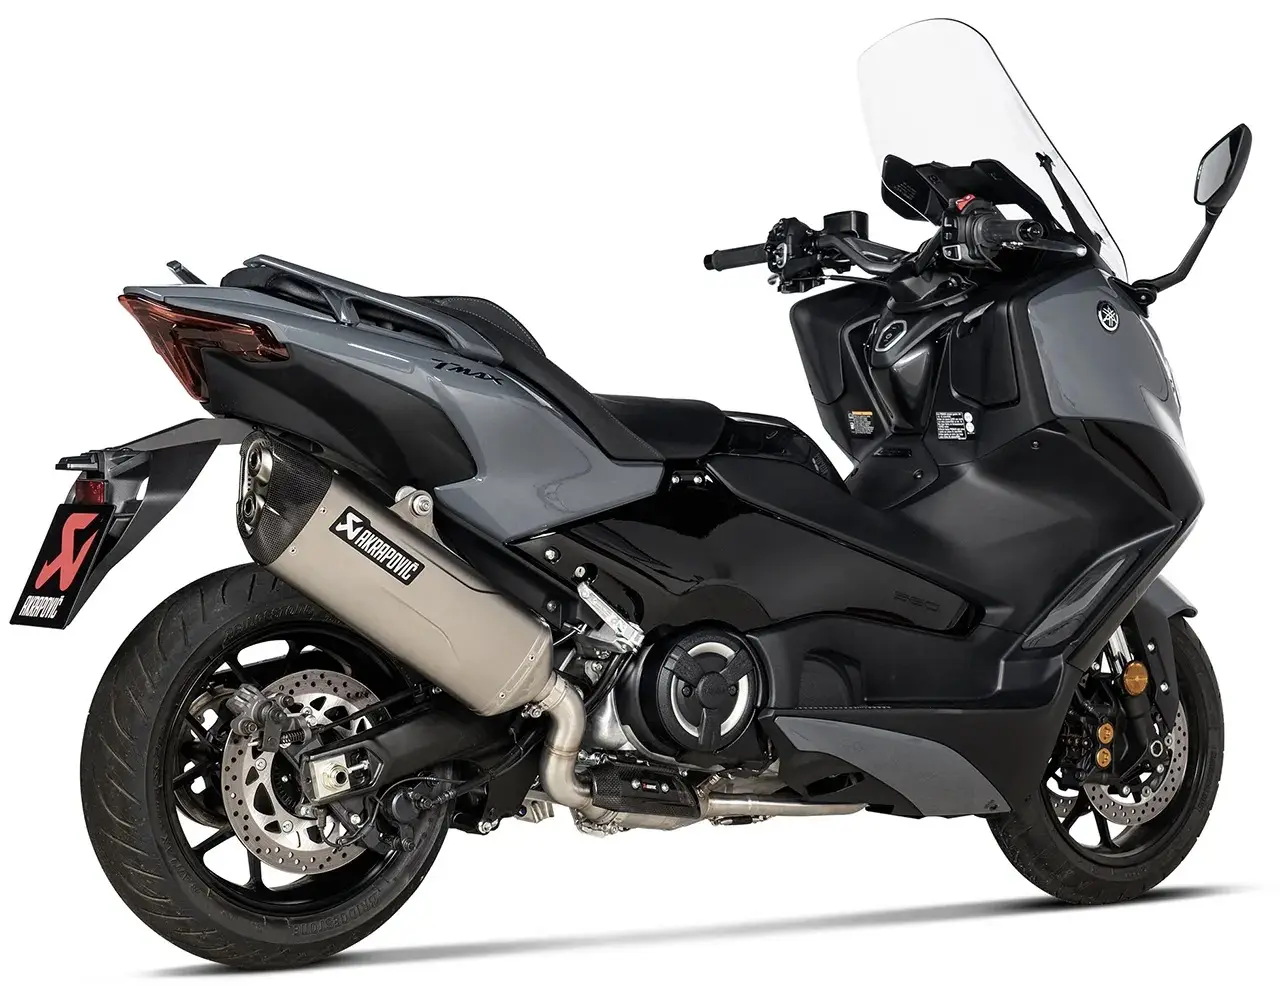 560cc Tmax560 Tmax 560 오토바이 먼지 자전거 오토바이에 대한 최고의 가격